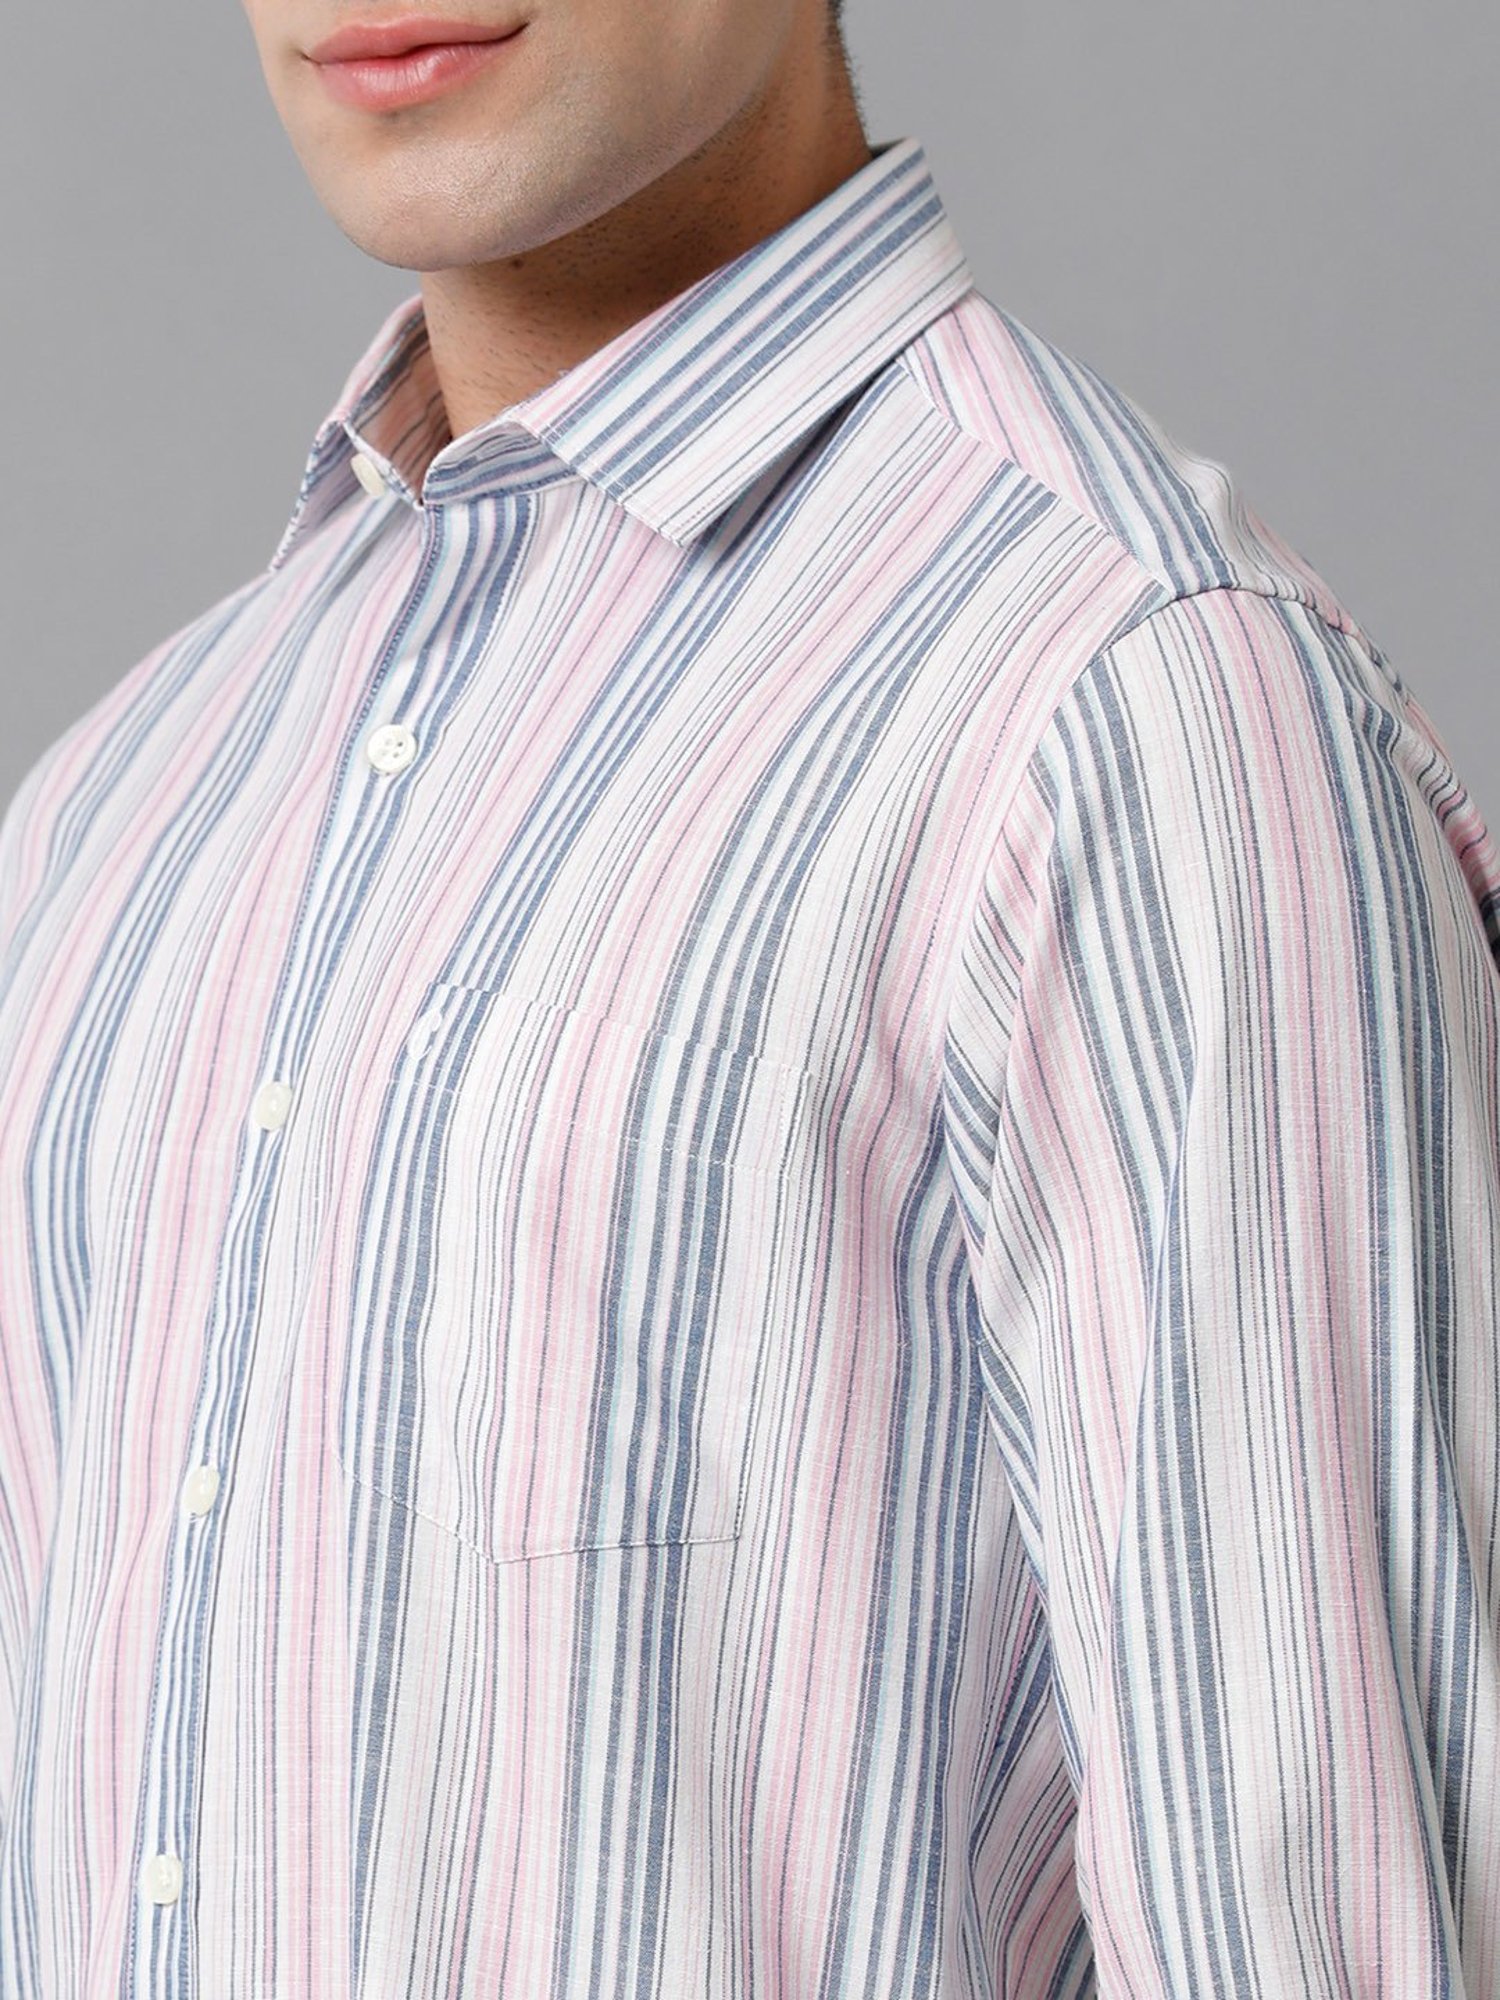 Cavallo By Linen Club Men's Cotton Linen Multicolor Striped